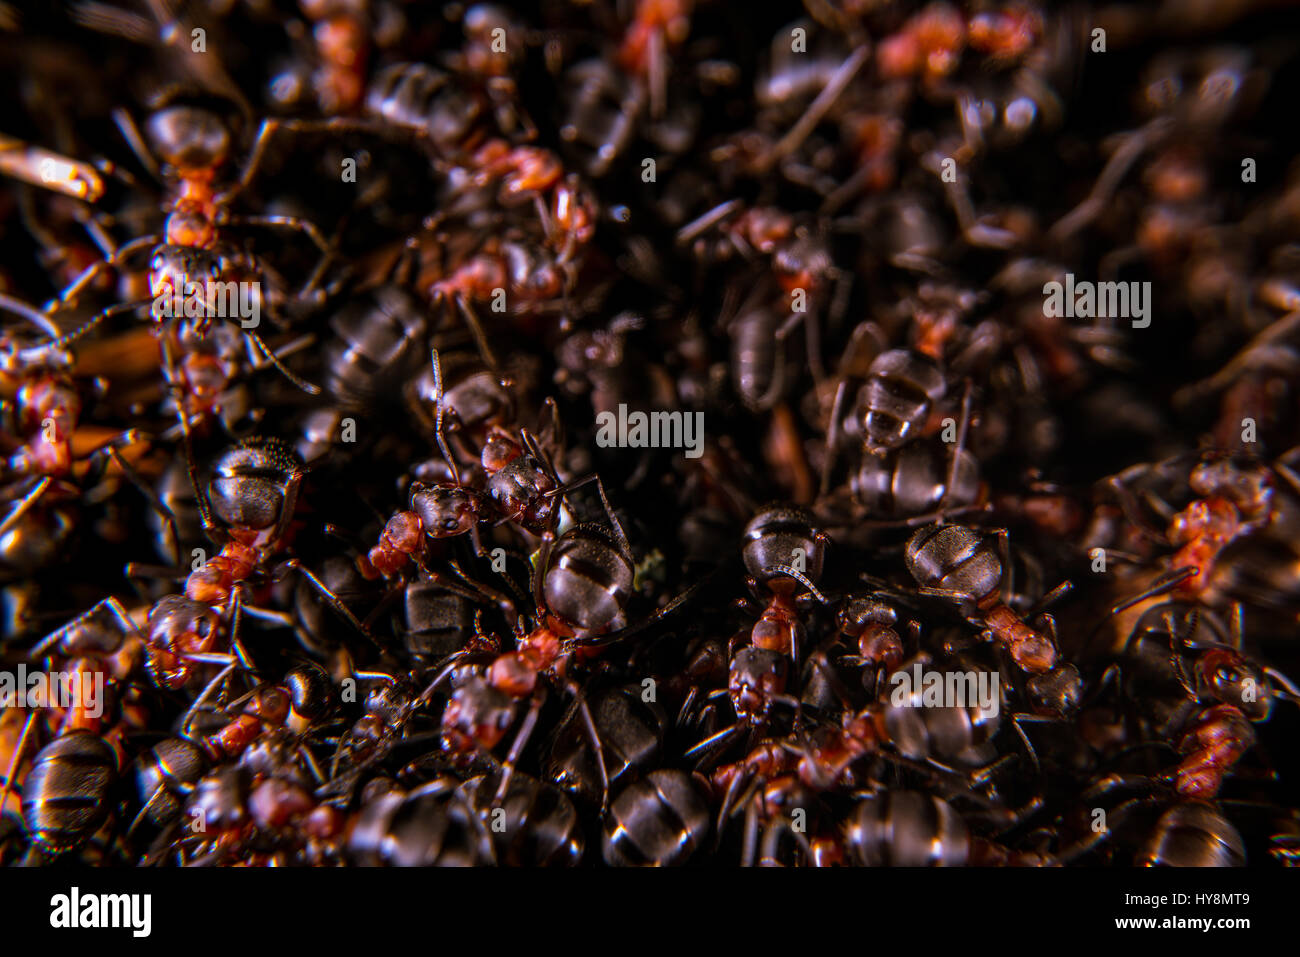 Les fourmis des bois rouge sur une fourmilière, close-up Banque D'Images